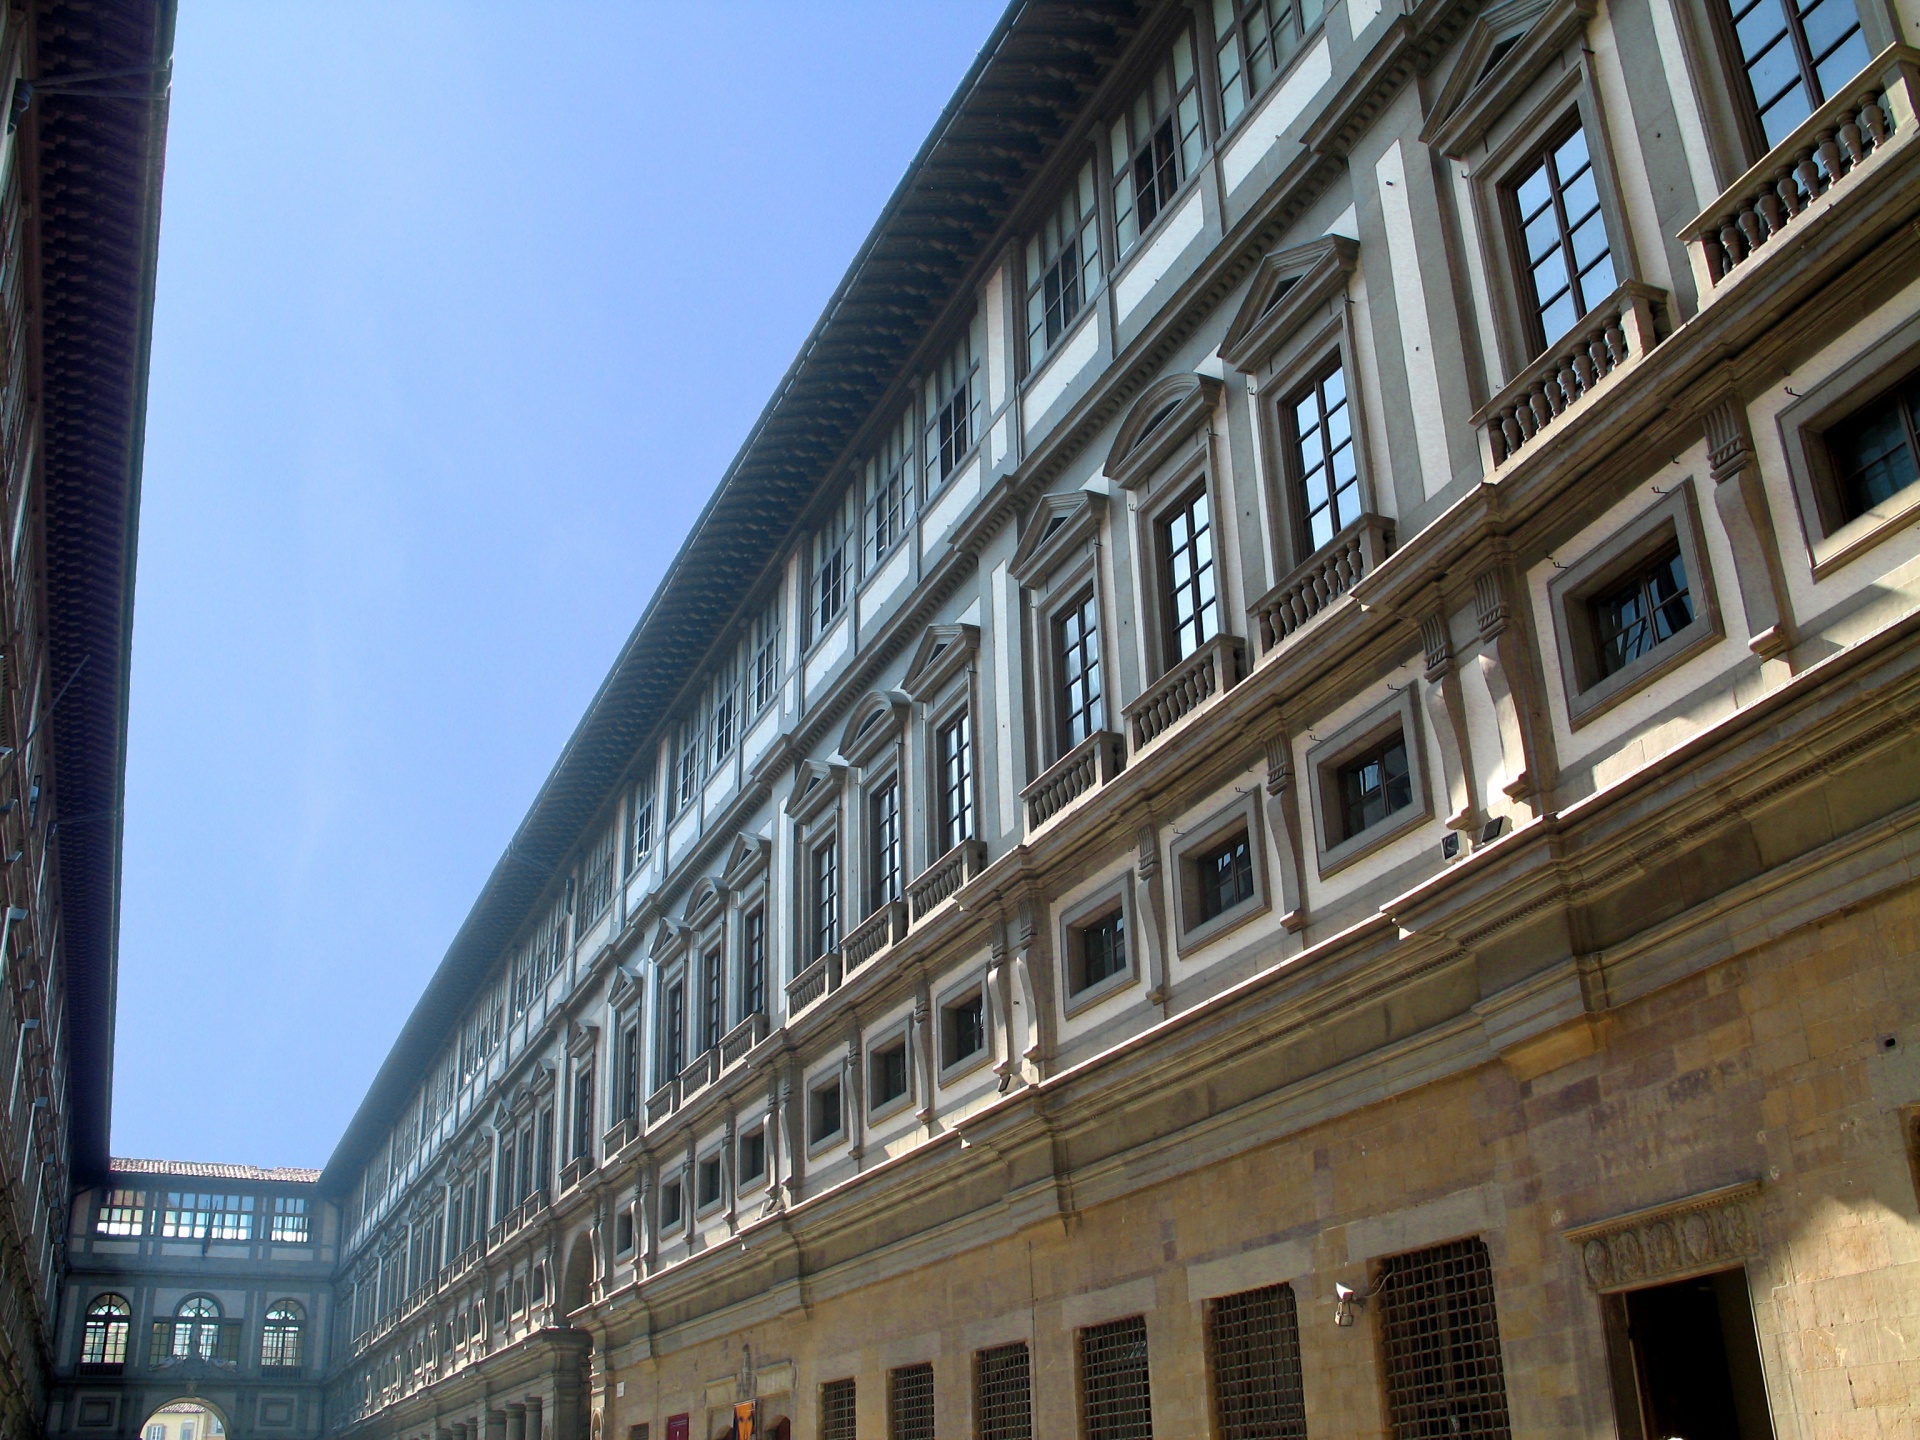 Florence - Uffizi Gallery